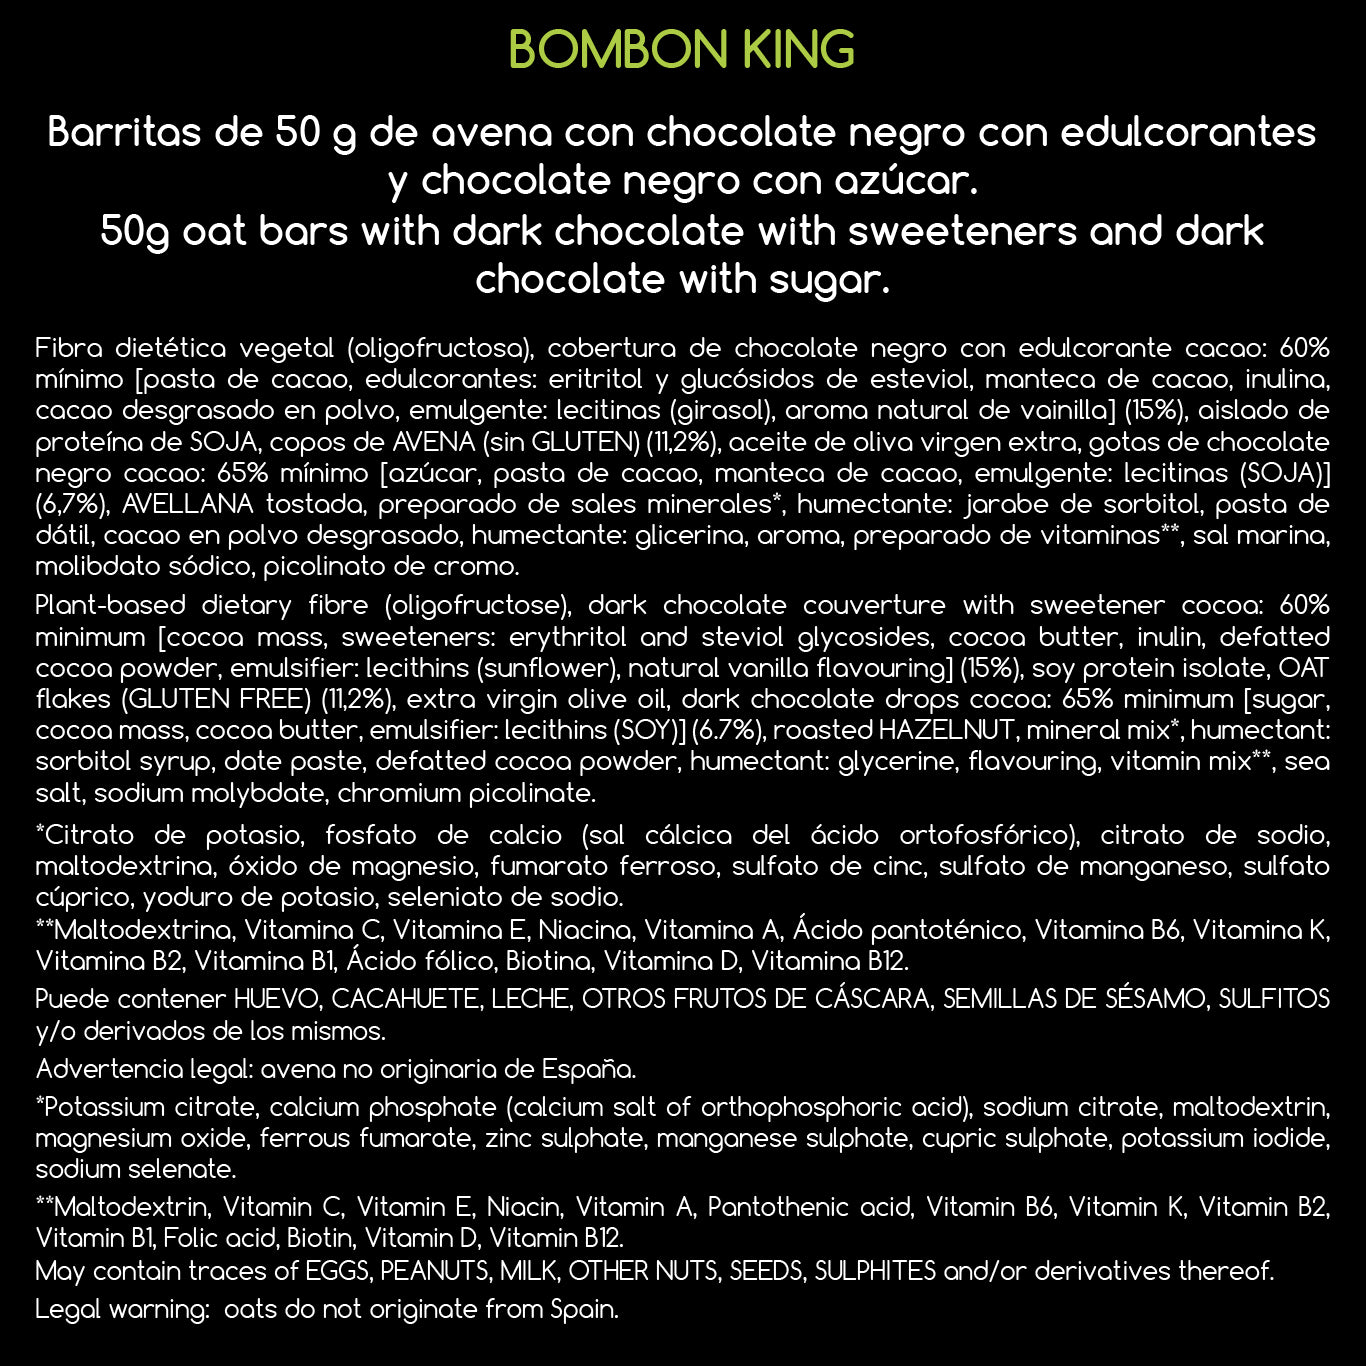 BOMBON KING